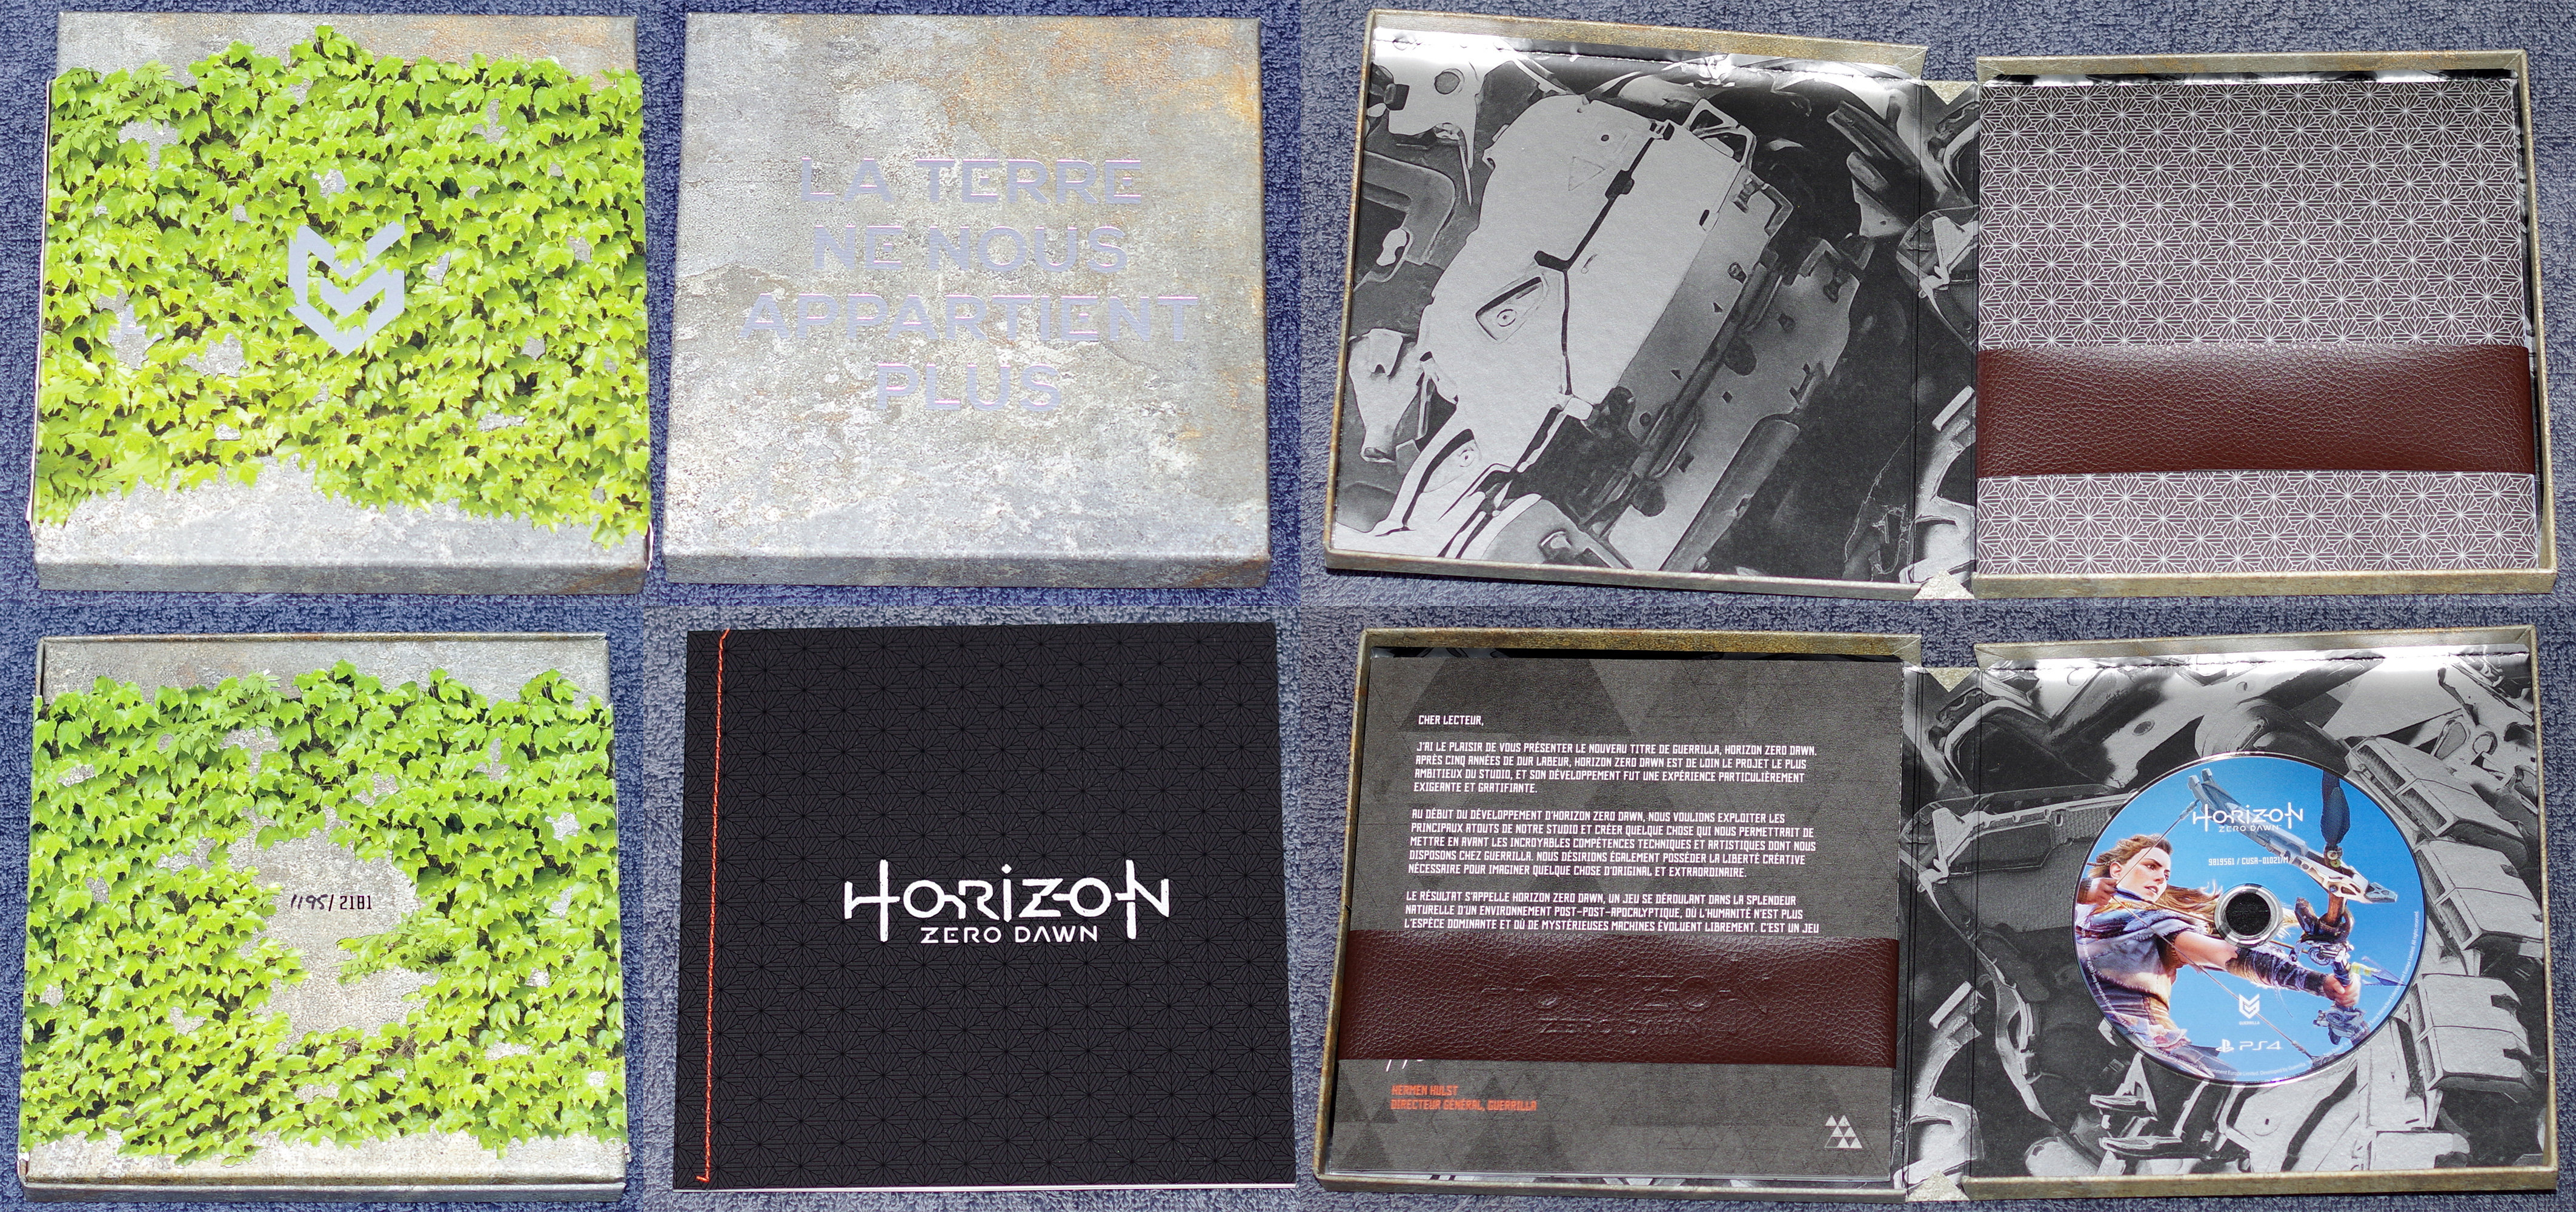  [EST] Horizon Zero Dawn Press Kit Y0xo